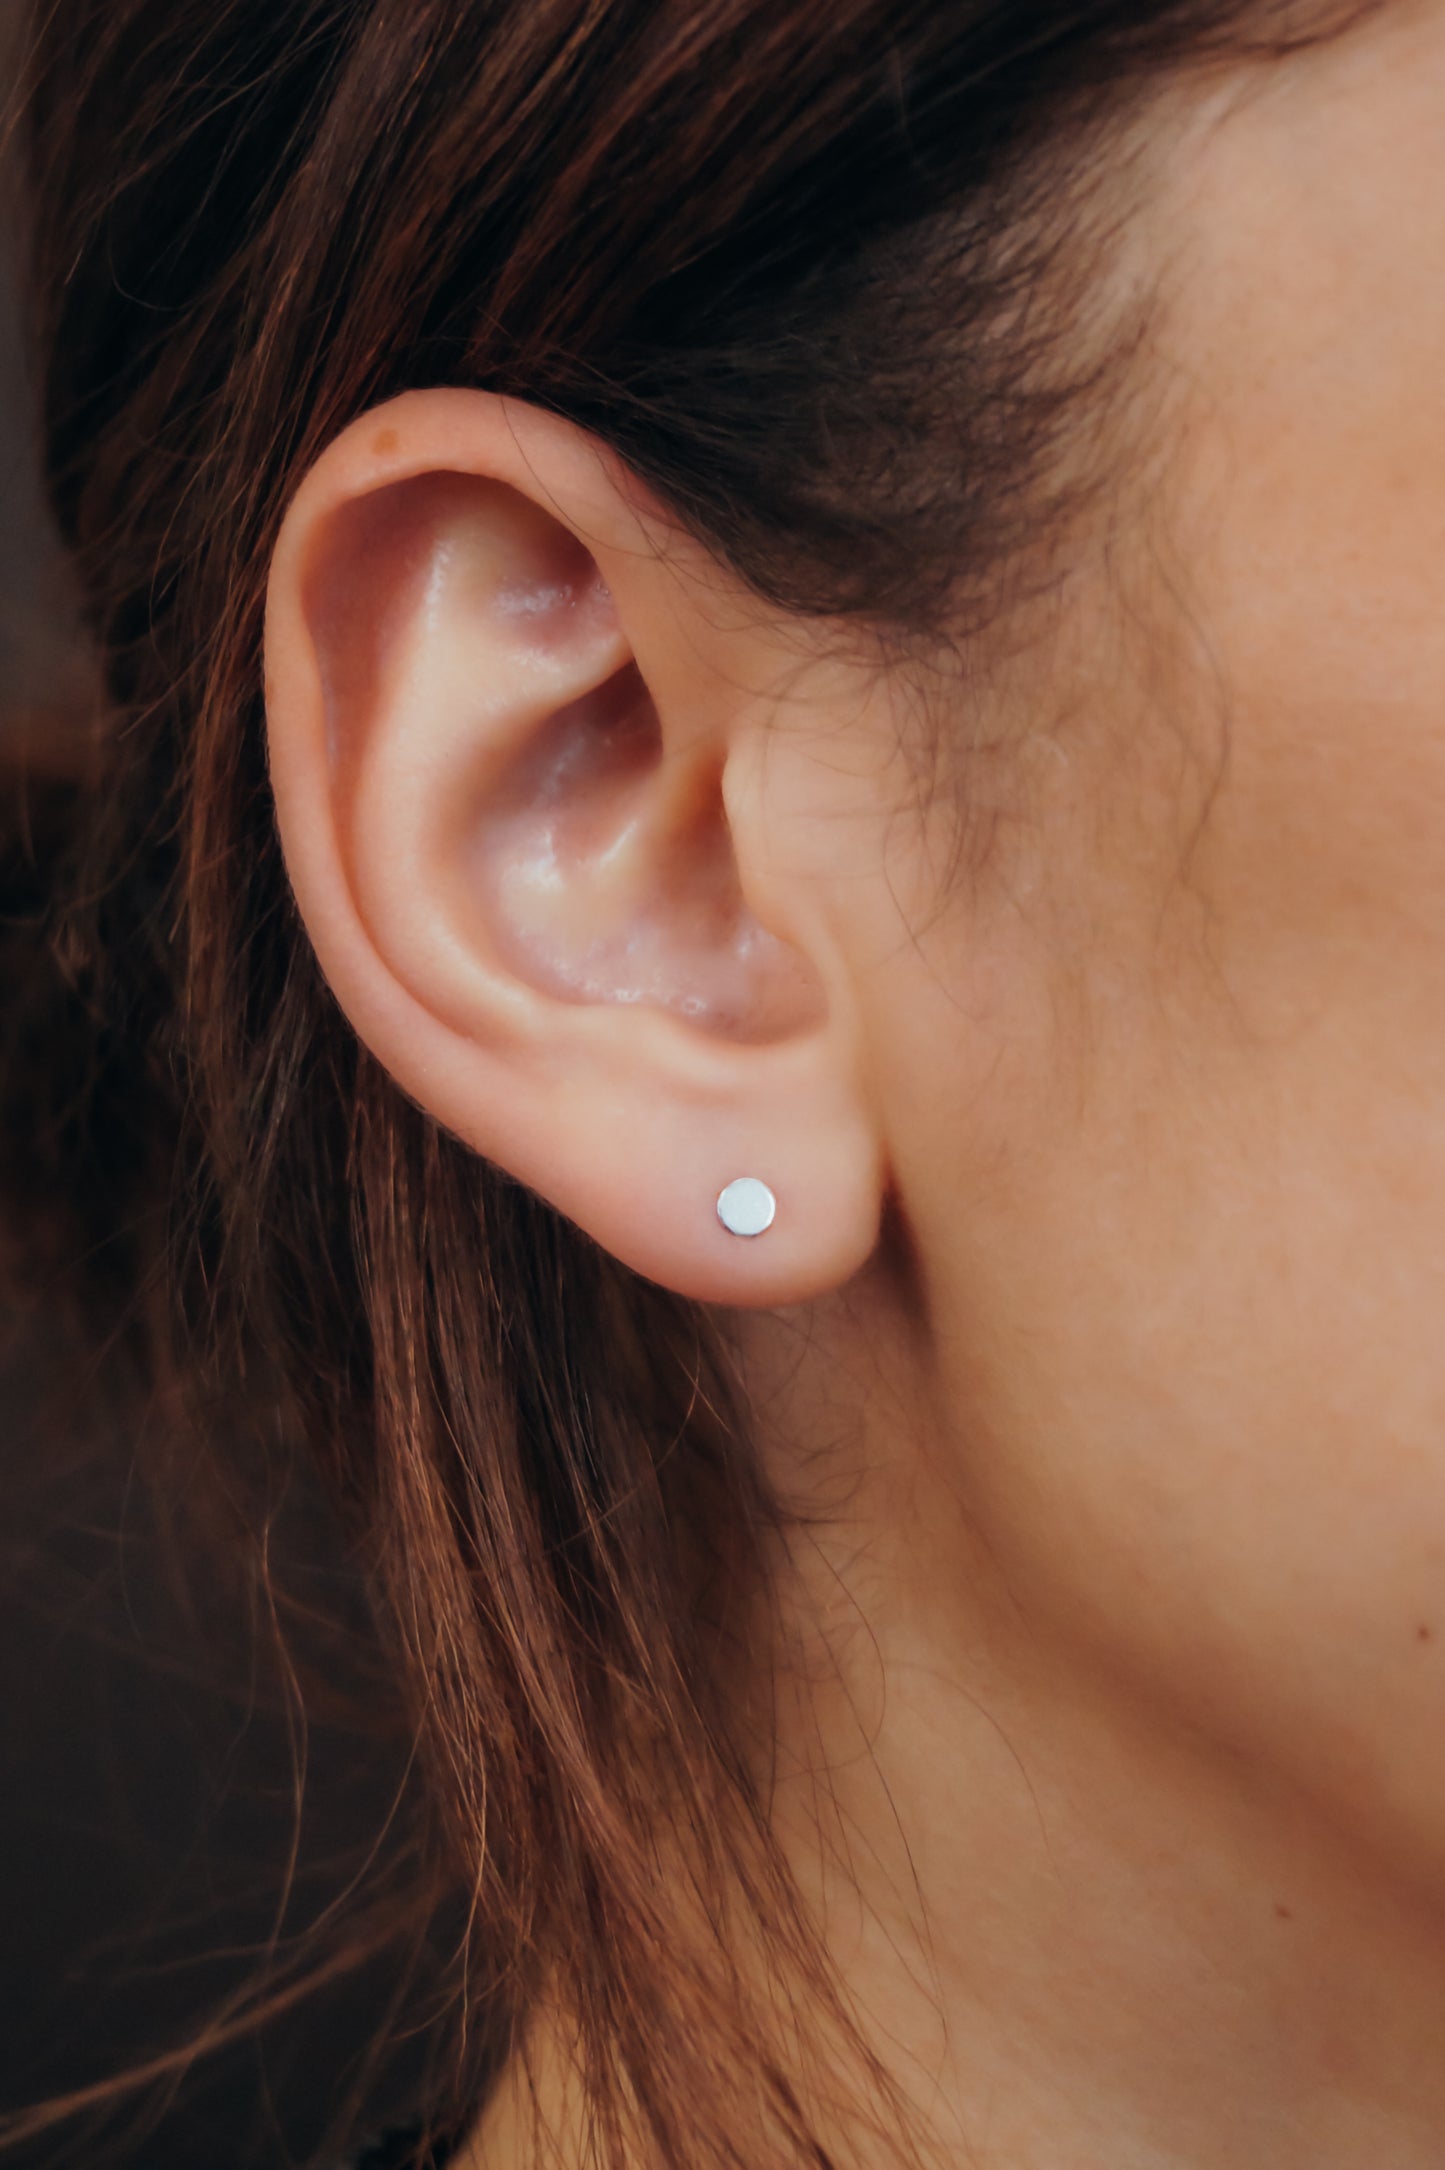 Mini Dot Stud Earrings in Gold Fill or Sterling Silver